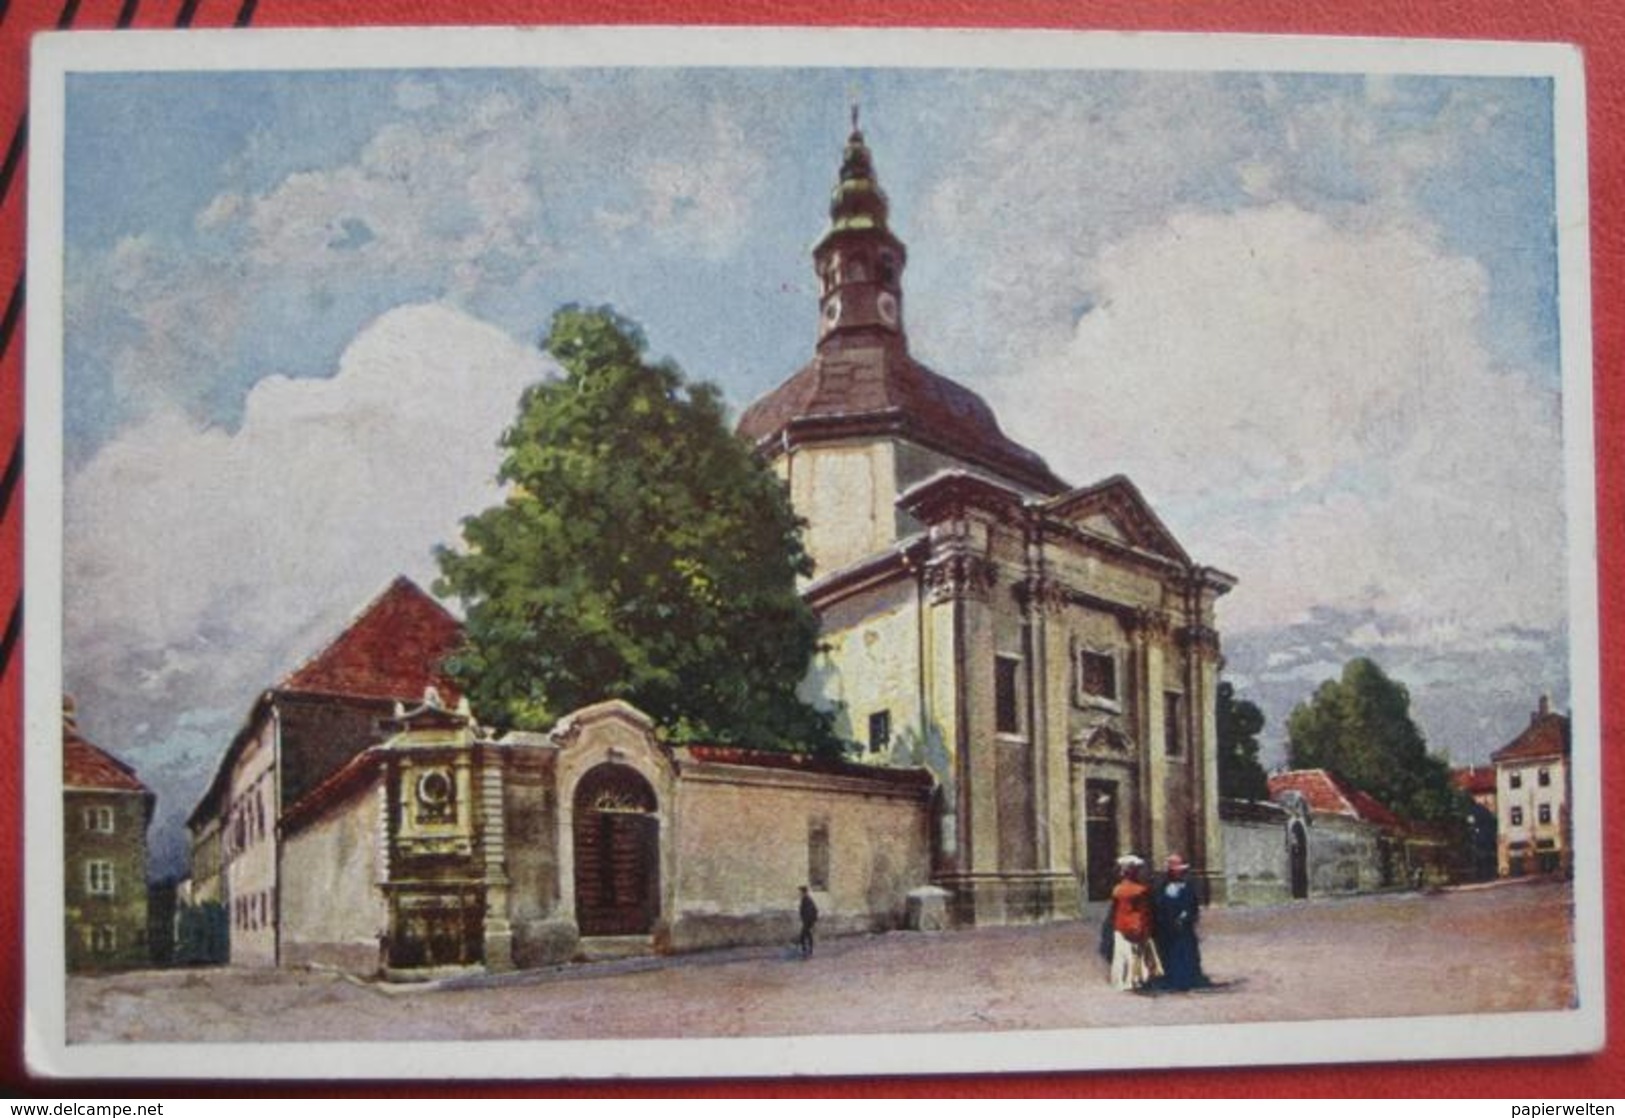 Ljubljana / Laibach - Künstlerkarte Deutsche Ritterordens-Kirche Und Anastasius Grün-Denkmal - Slowenien